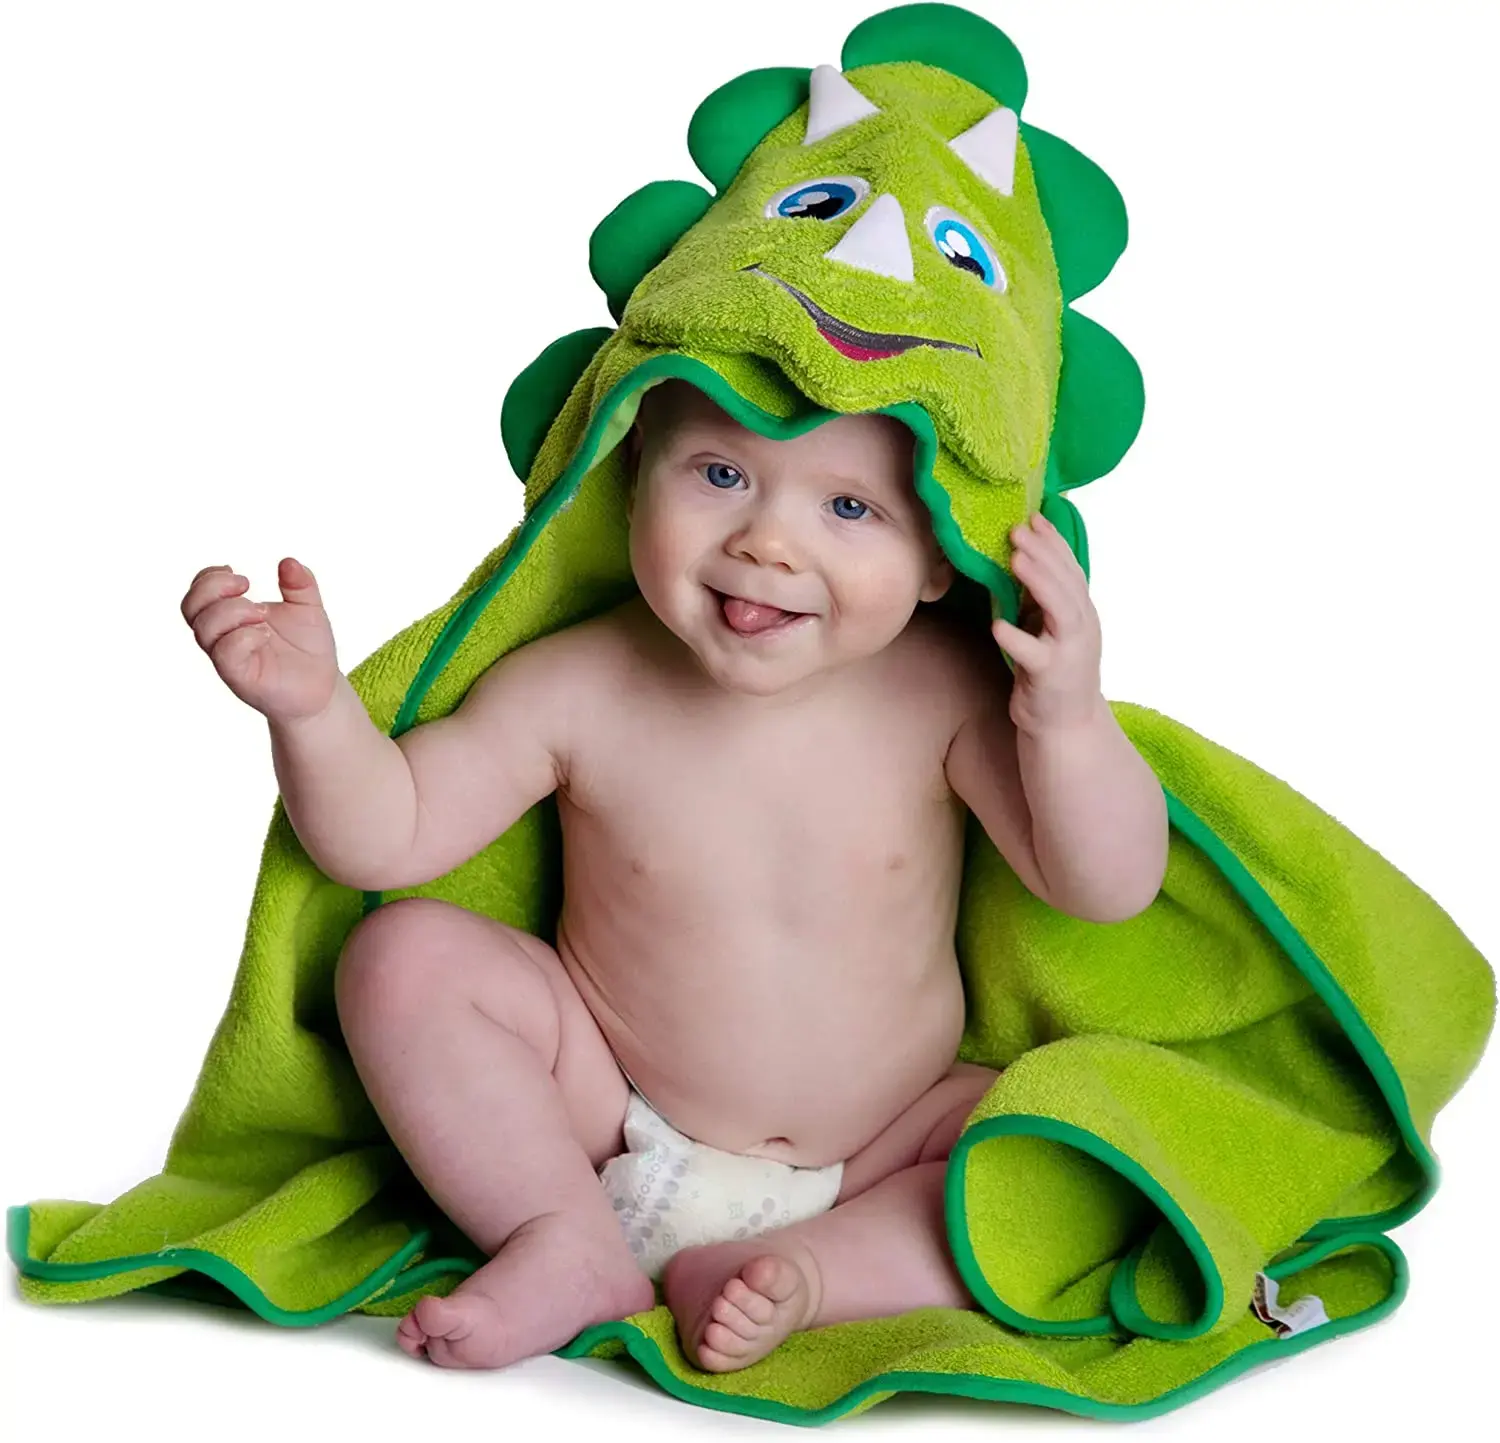 Hooded Baby Handtuch Dinosaurier von Little Tinkers World Natural Cotton Weiche und saugfähige Badet ücher mit Kapuze für Babys, Kleinkinder,